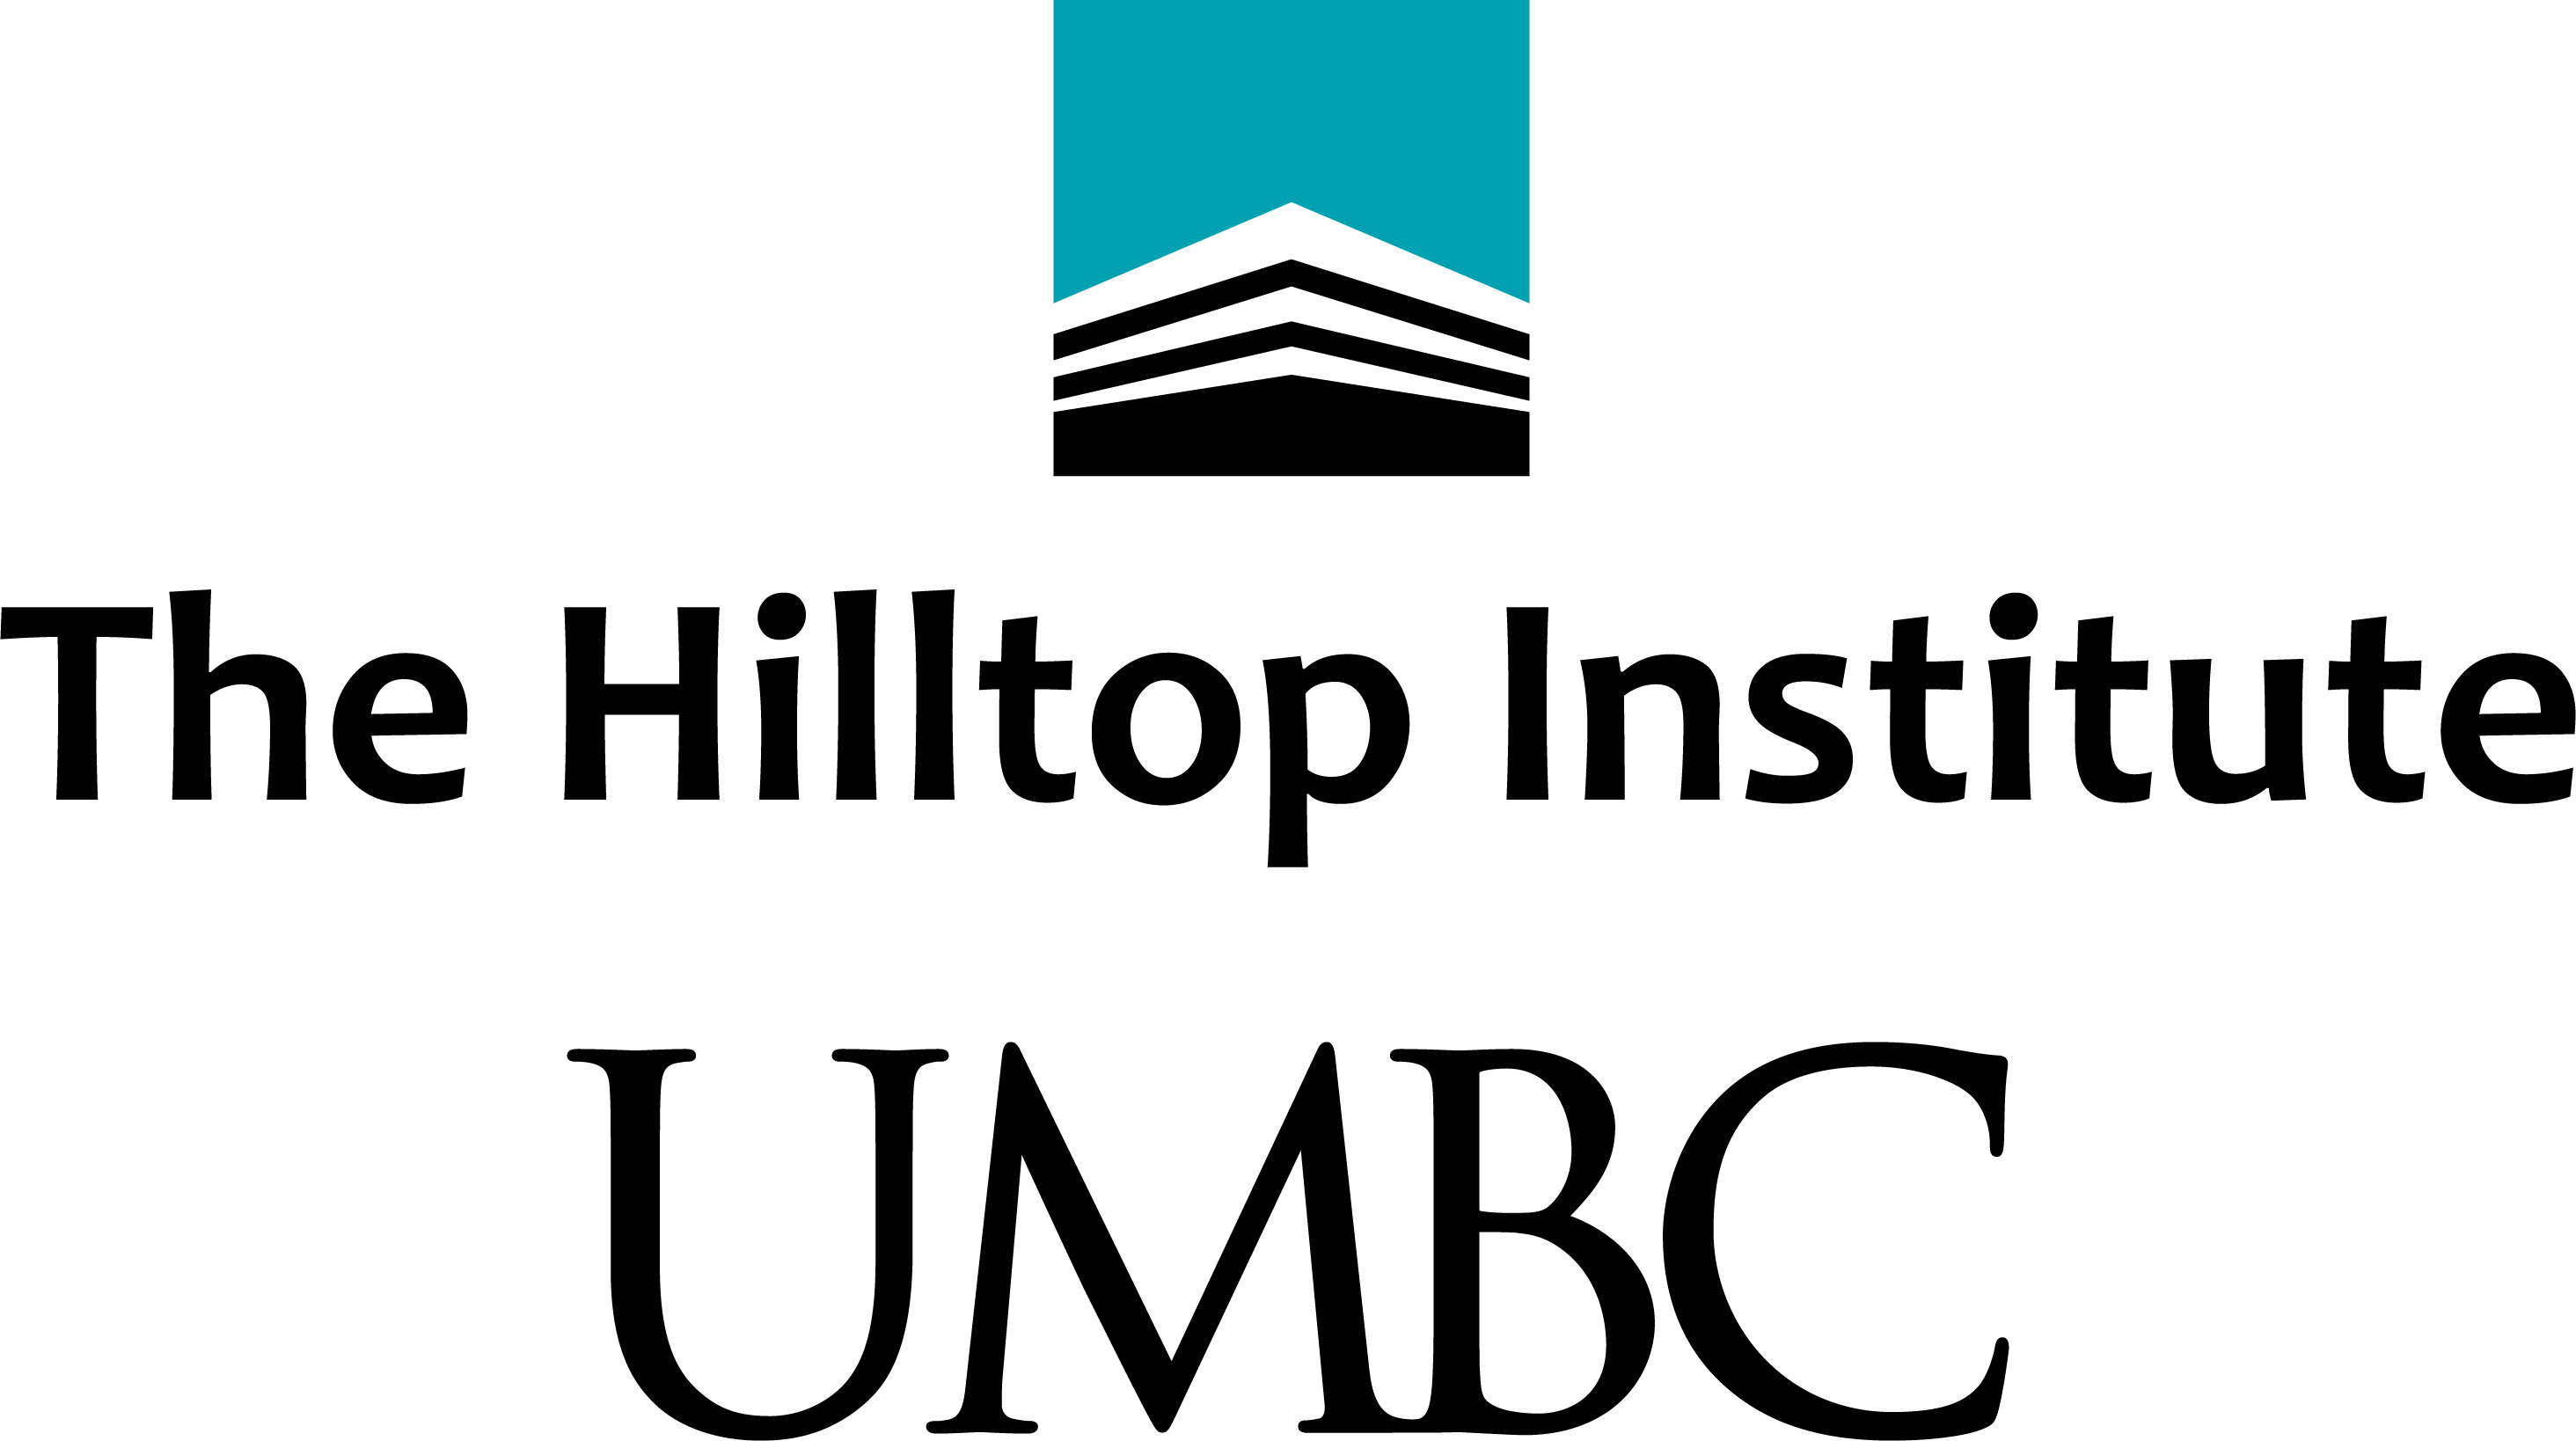 UMB Hiltop Institute